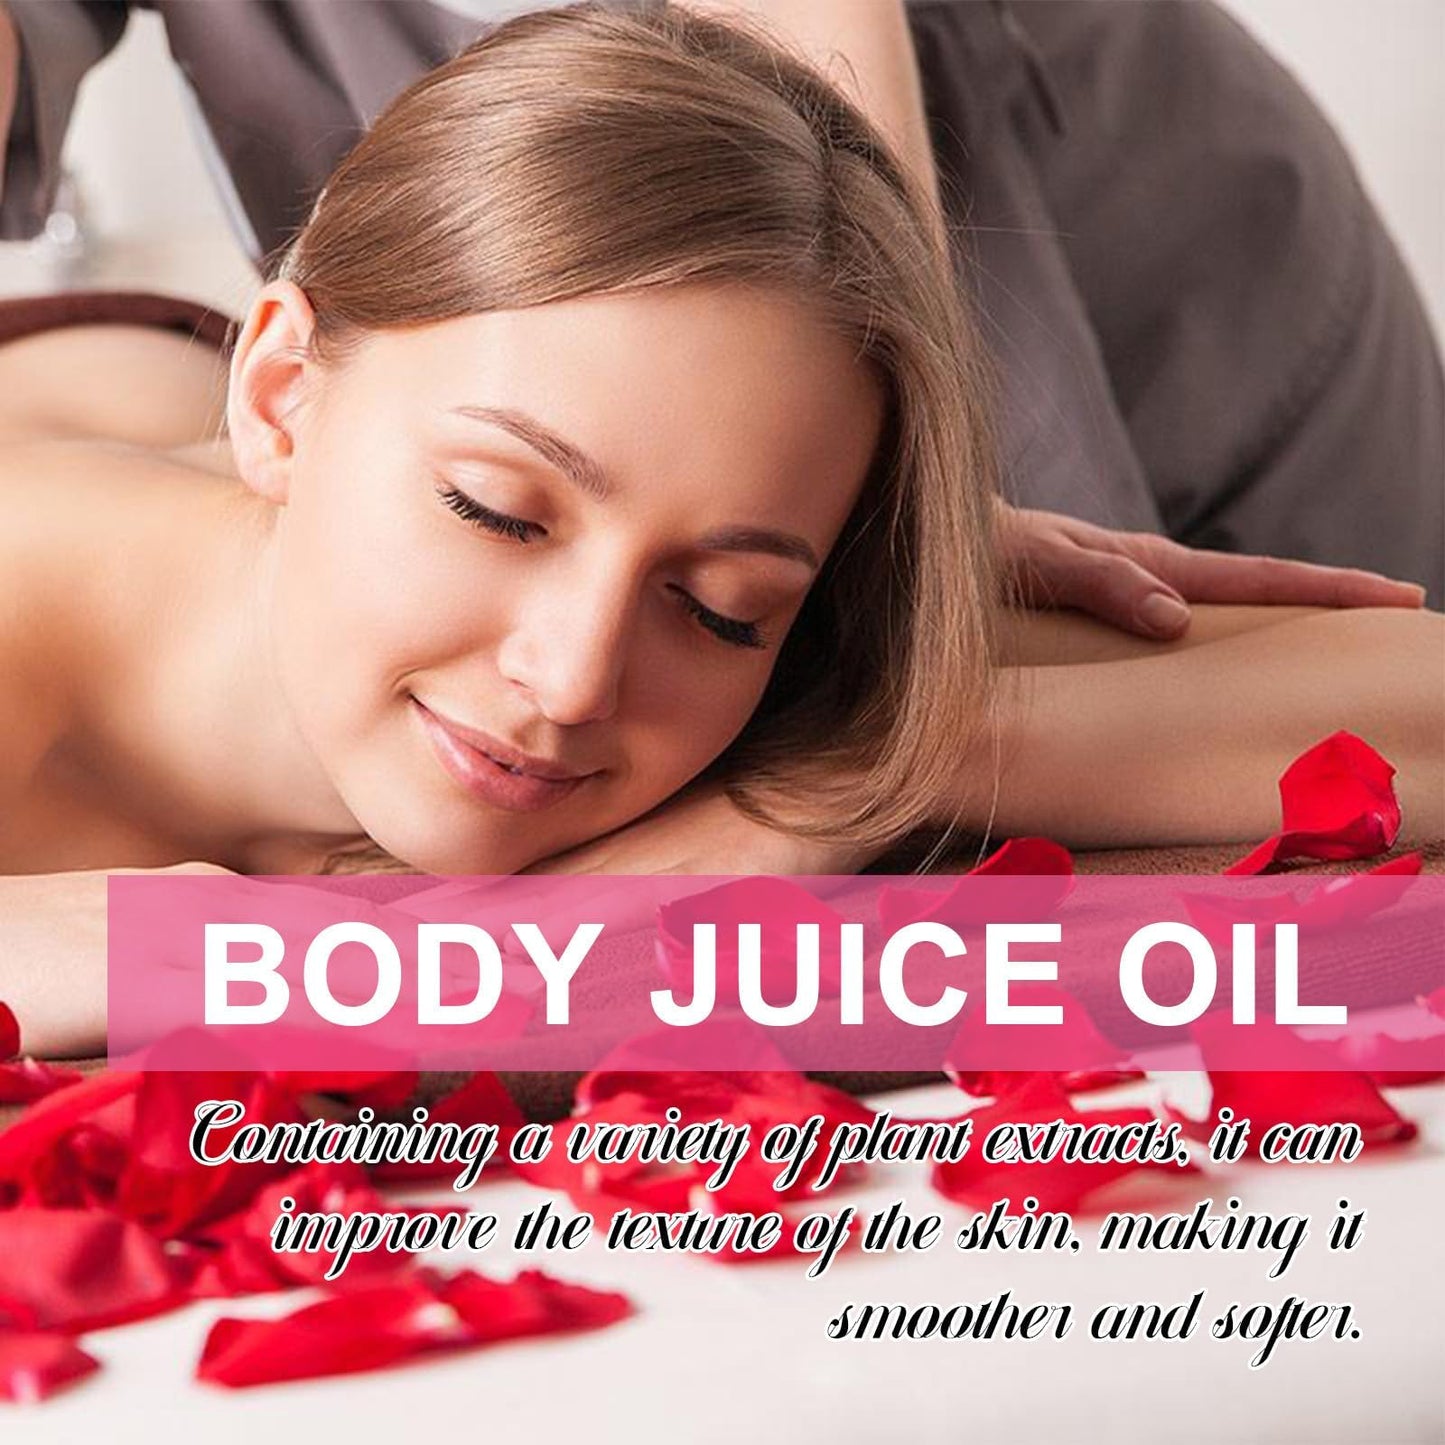 Body Juice Oil Peach Perfect, Body Juice Oil, Body Juice Oil Strawberry Shortcake, Strawberry Shortcake Body Oil, Body Juice Oil Scent Strawberry, Body Juice Oil Cinnamon Bun (Strawberry Flavor)